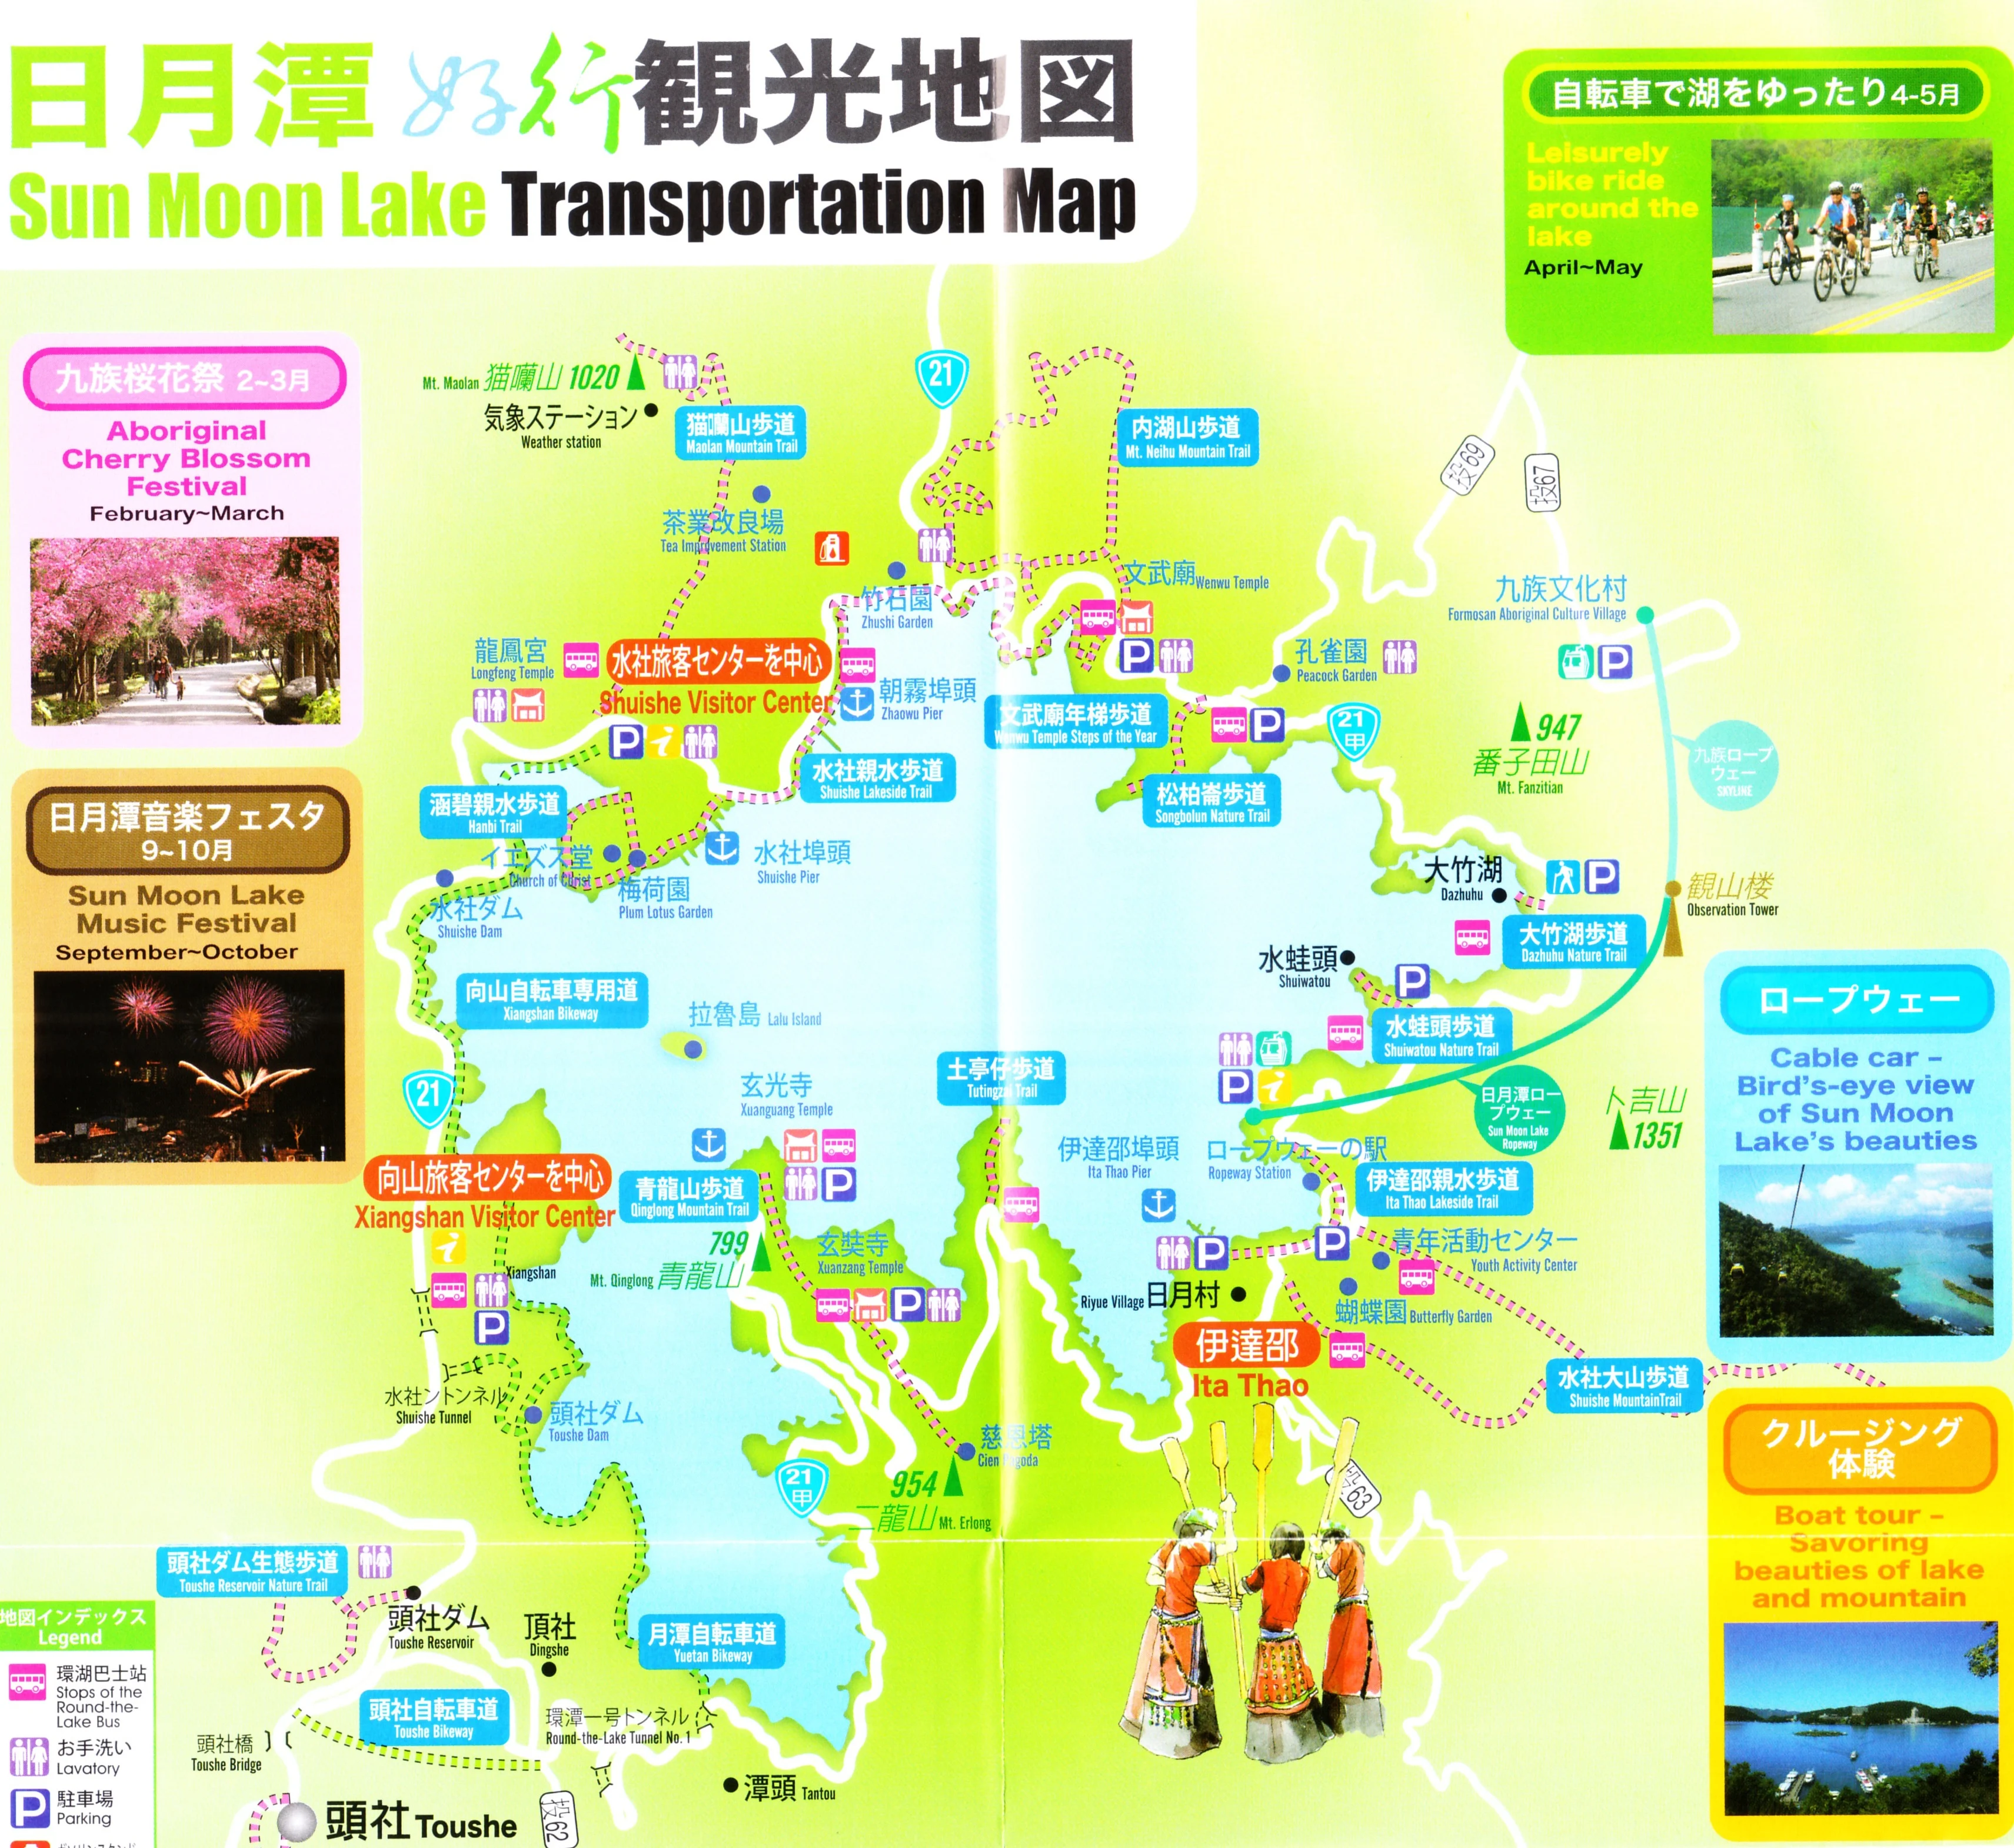 Map of Sun Moon Lake, Taiwan